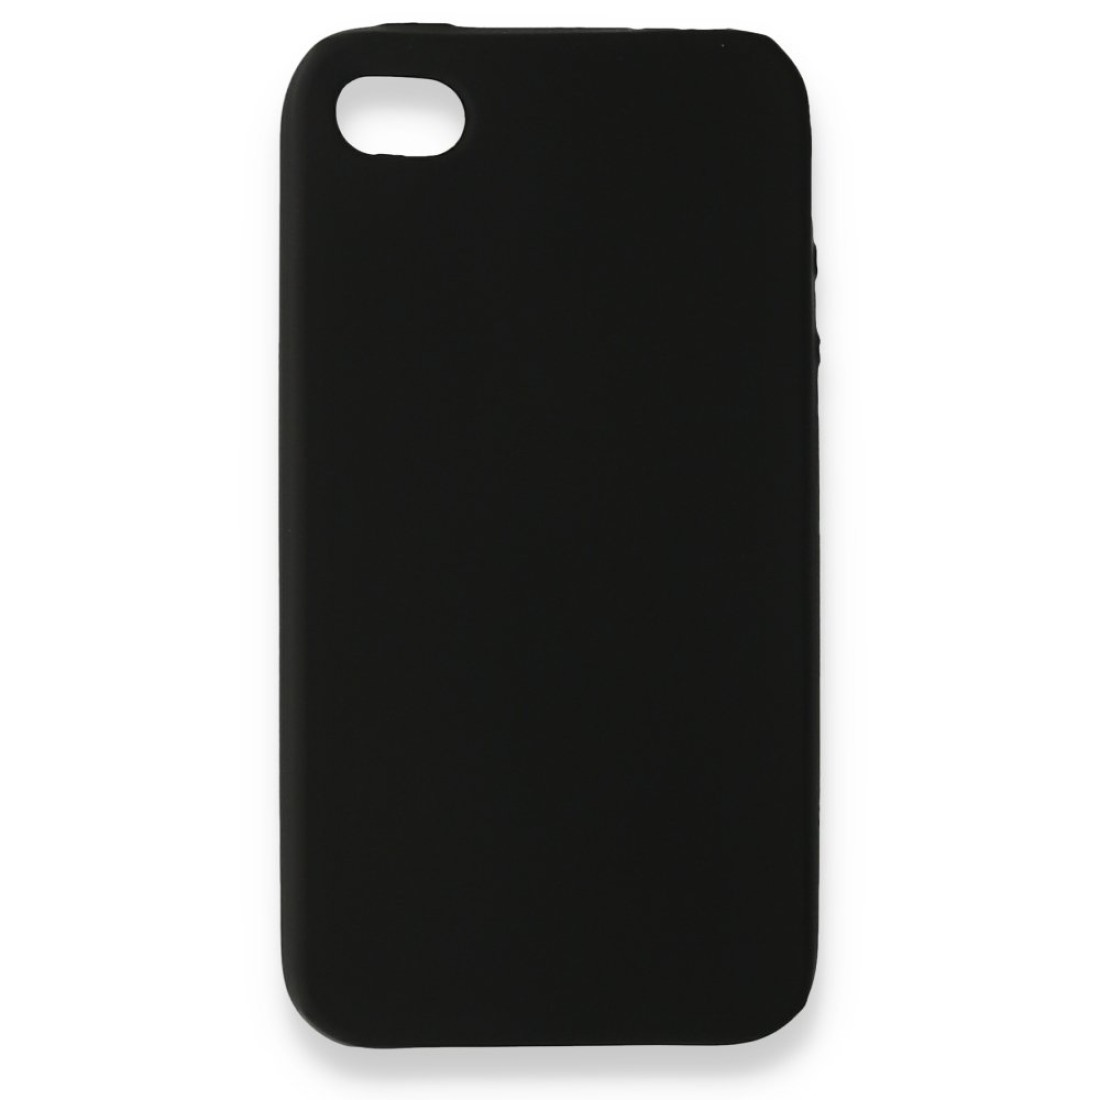 Apple iPhone 4 Kılıf Premium Rubber Silikon - Siyah